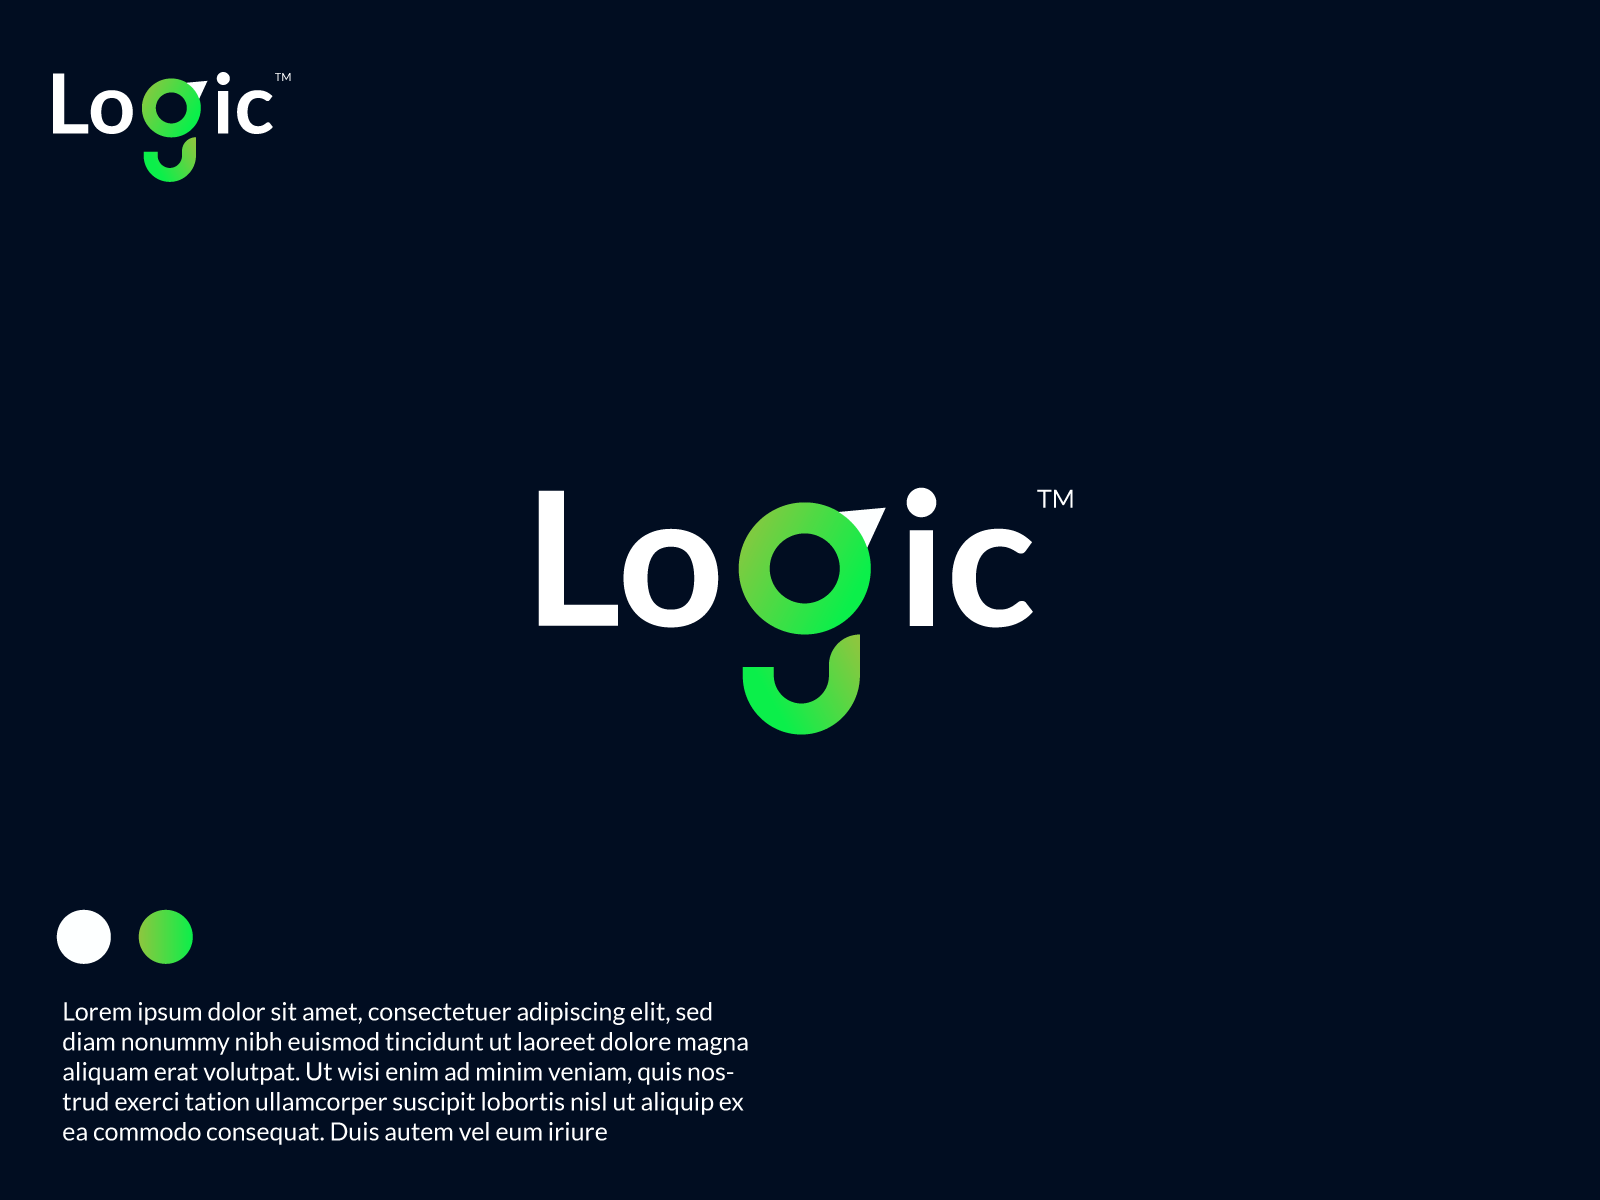 Logic 3d abstract logo 3d 3d logo abstract logo alphabet logo branding business logo creative logo design letter logo logic logo logo design minimalist logo modern logo professional logo unique logo